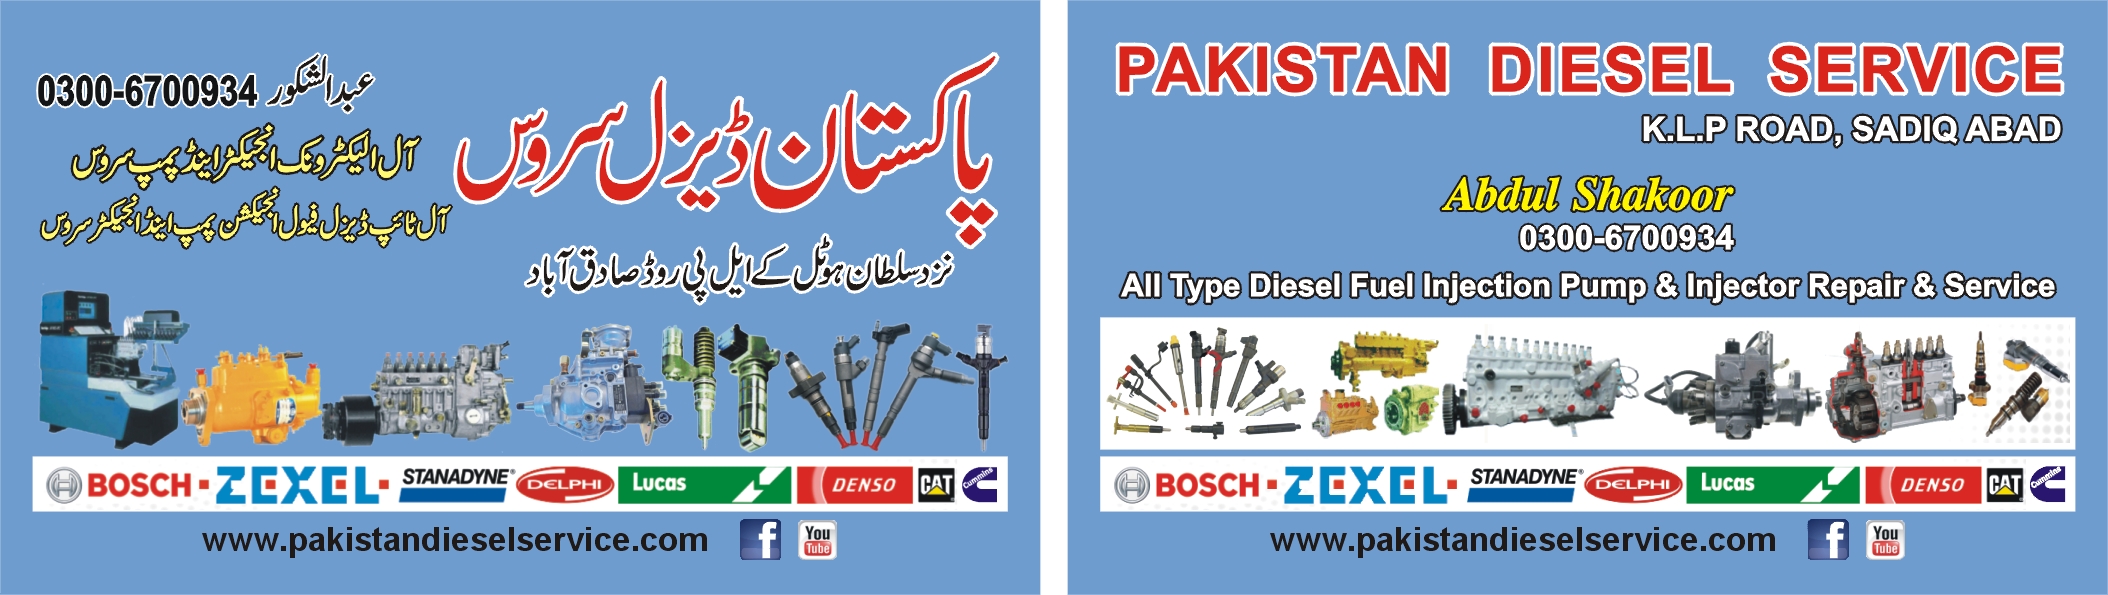 Pakistan Diesel Service